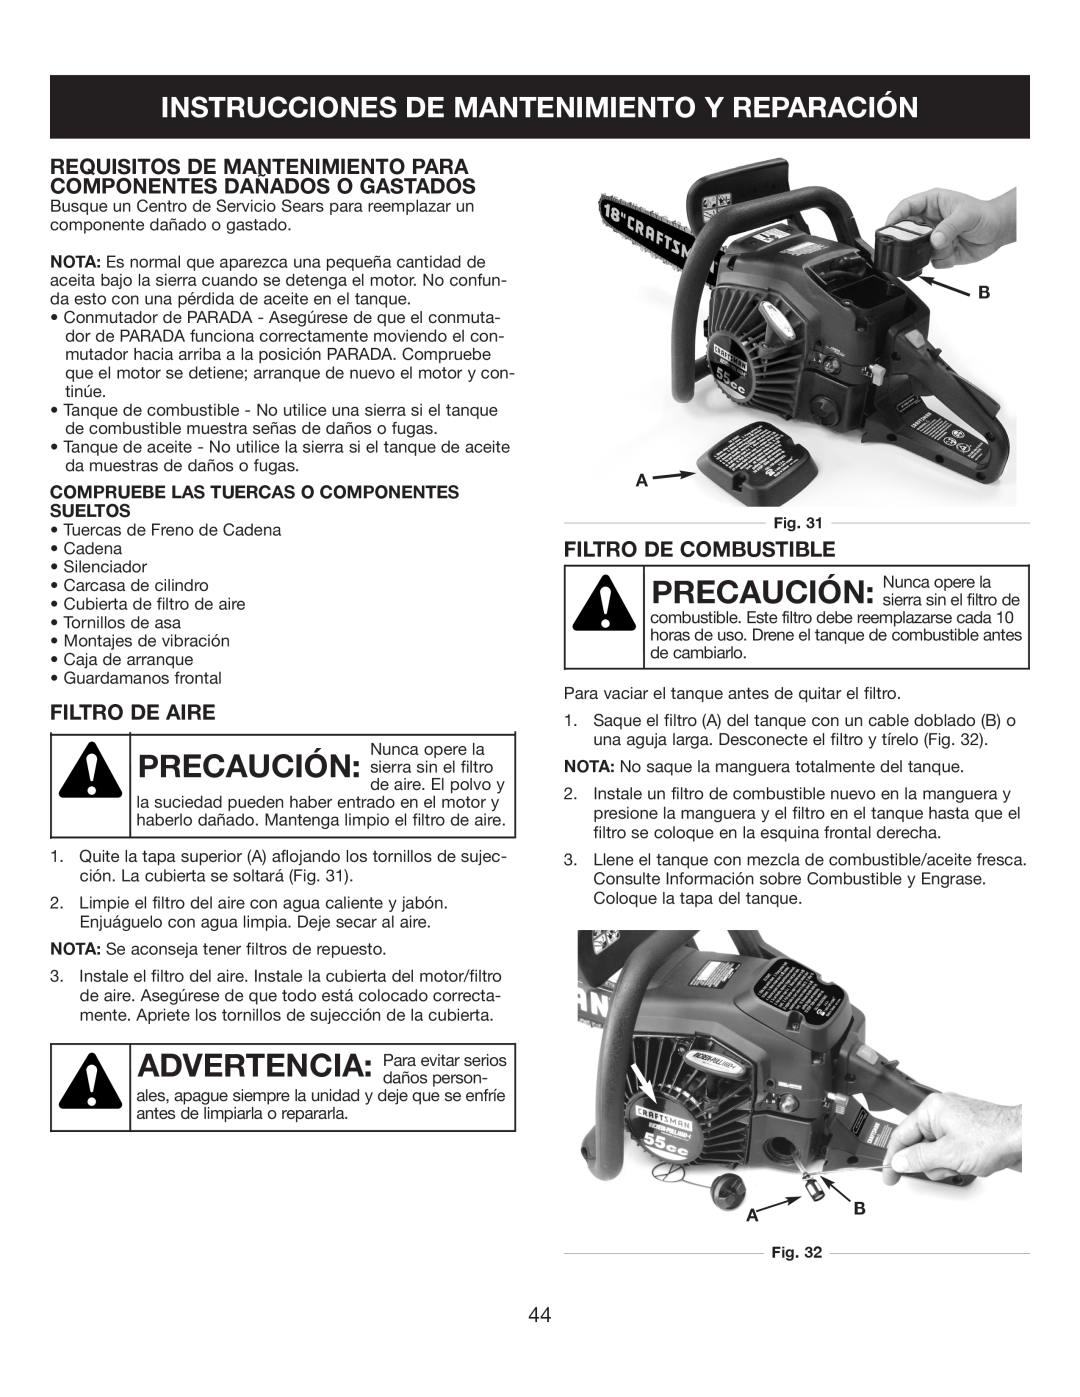 Sears 316.35084 manual Instrucciones De Mantenimiento Y Reparación, Filtro De Aire, Filtro De Combustible 